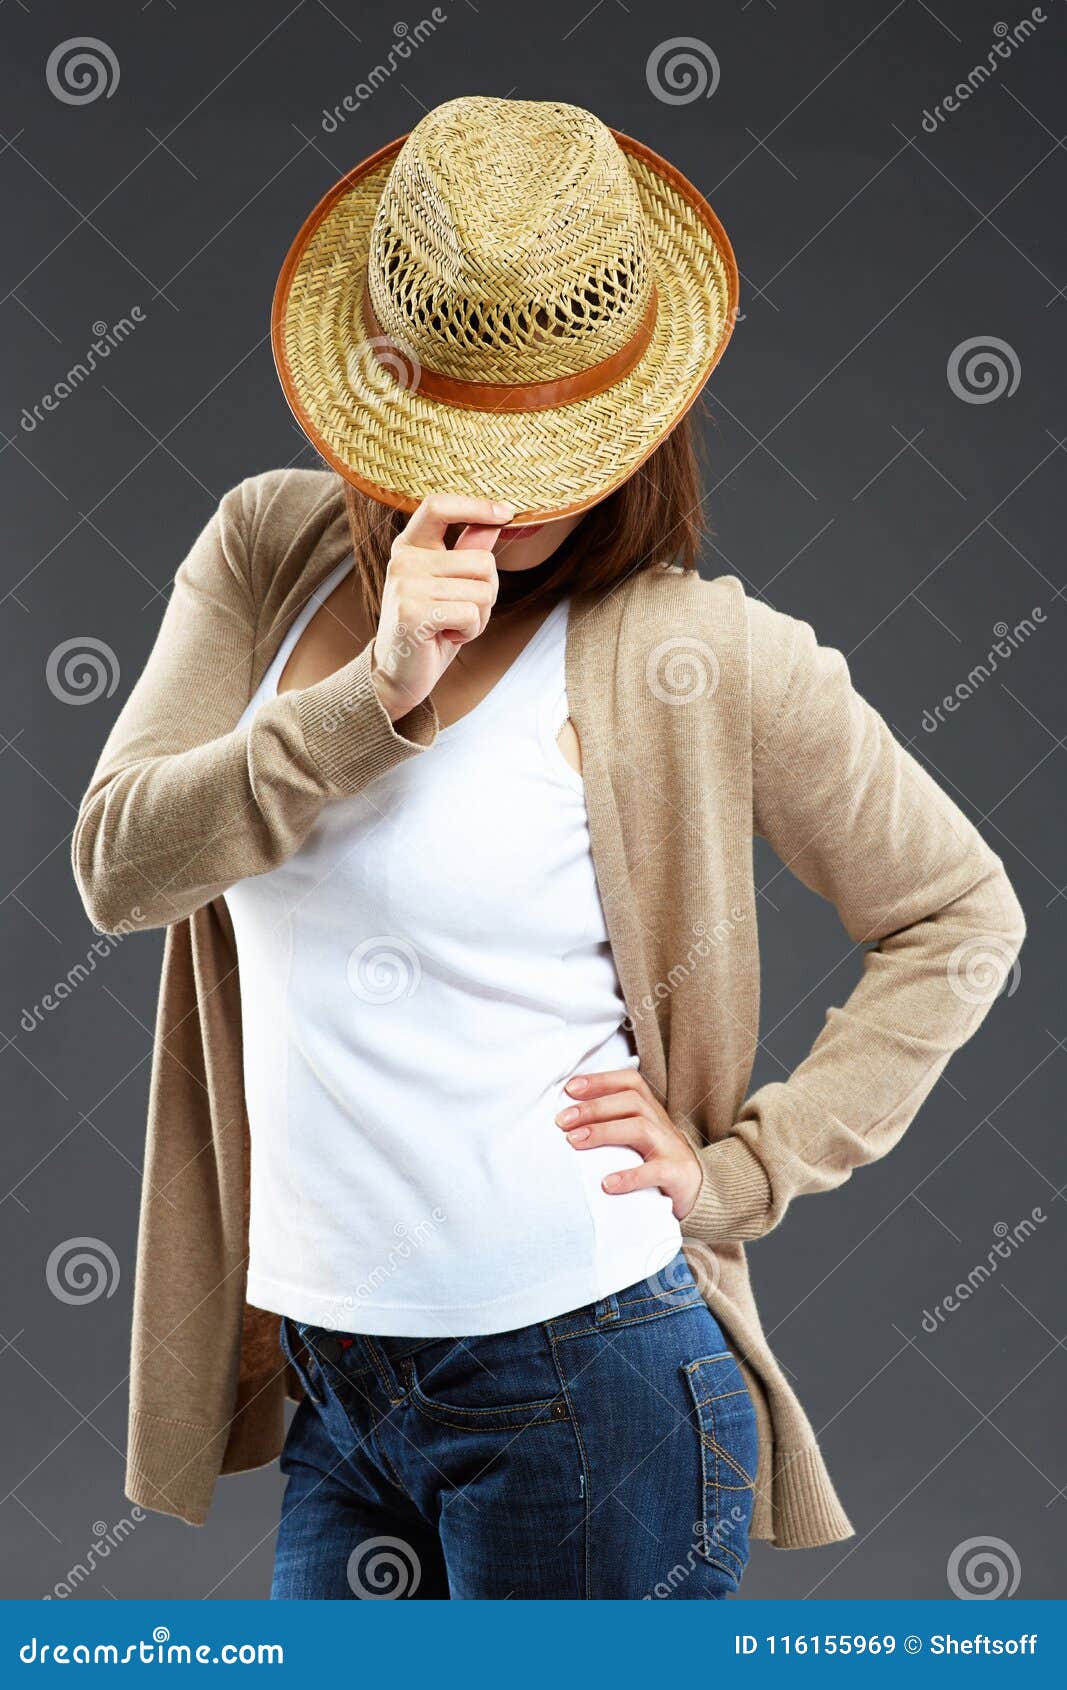 Casual De La Mujer Joven Vestido Con El Sombrero Imagen de archivo Imagen de persona: 116155969